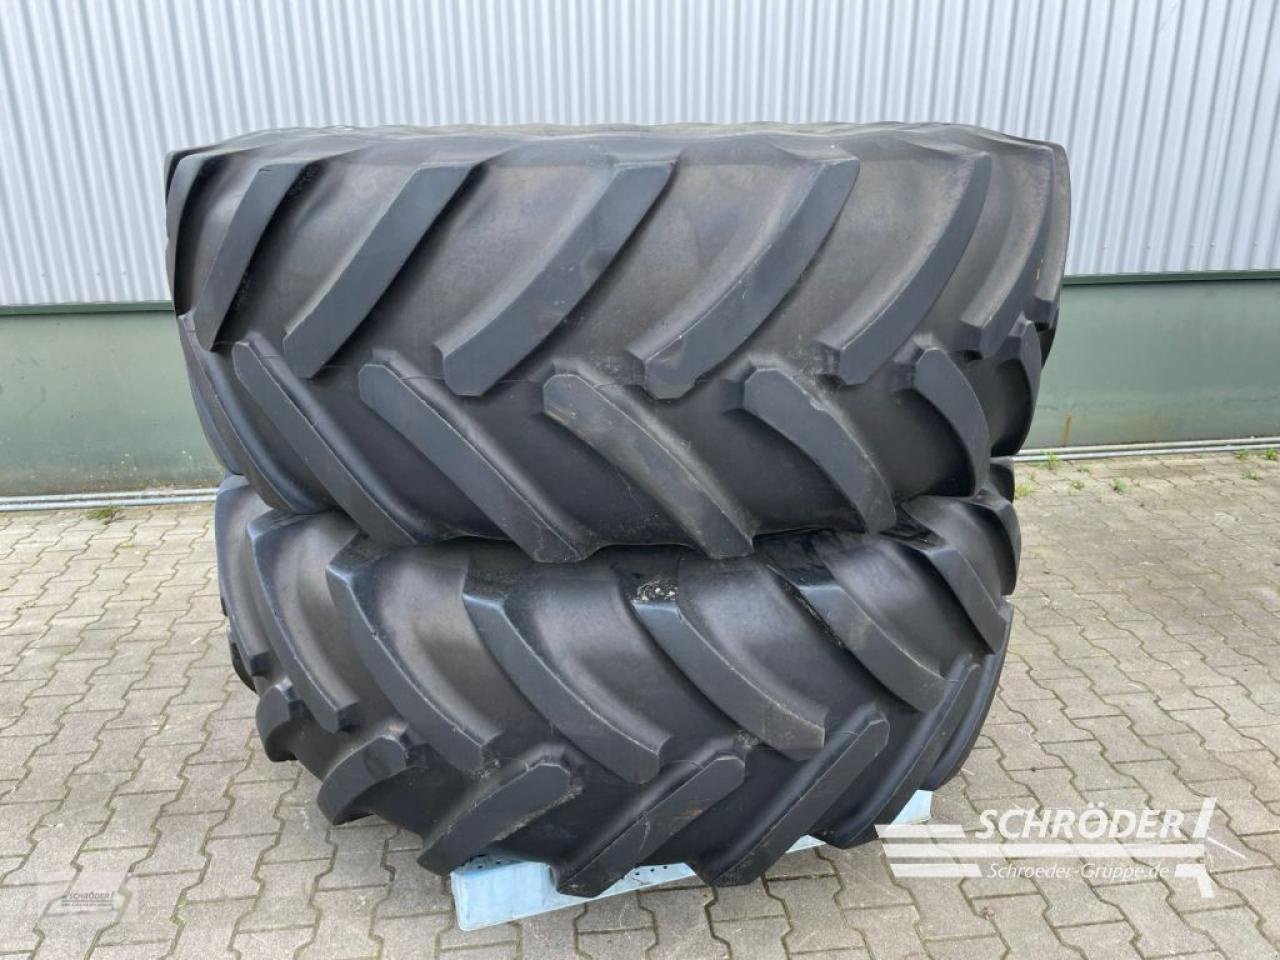 Zwillingsrad des Typs Michelin 650/85 R38 2 STÜCK, Gebrauchtmaschine in Wildeshausen (Bild 1)